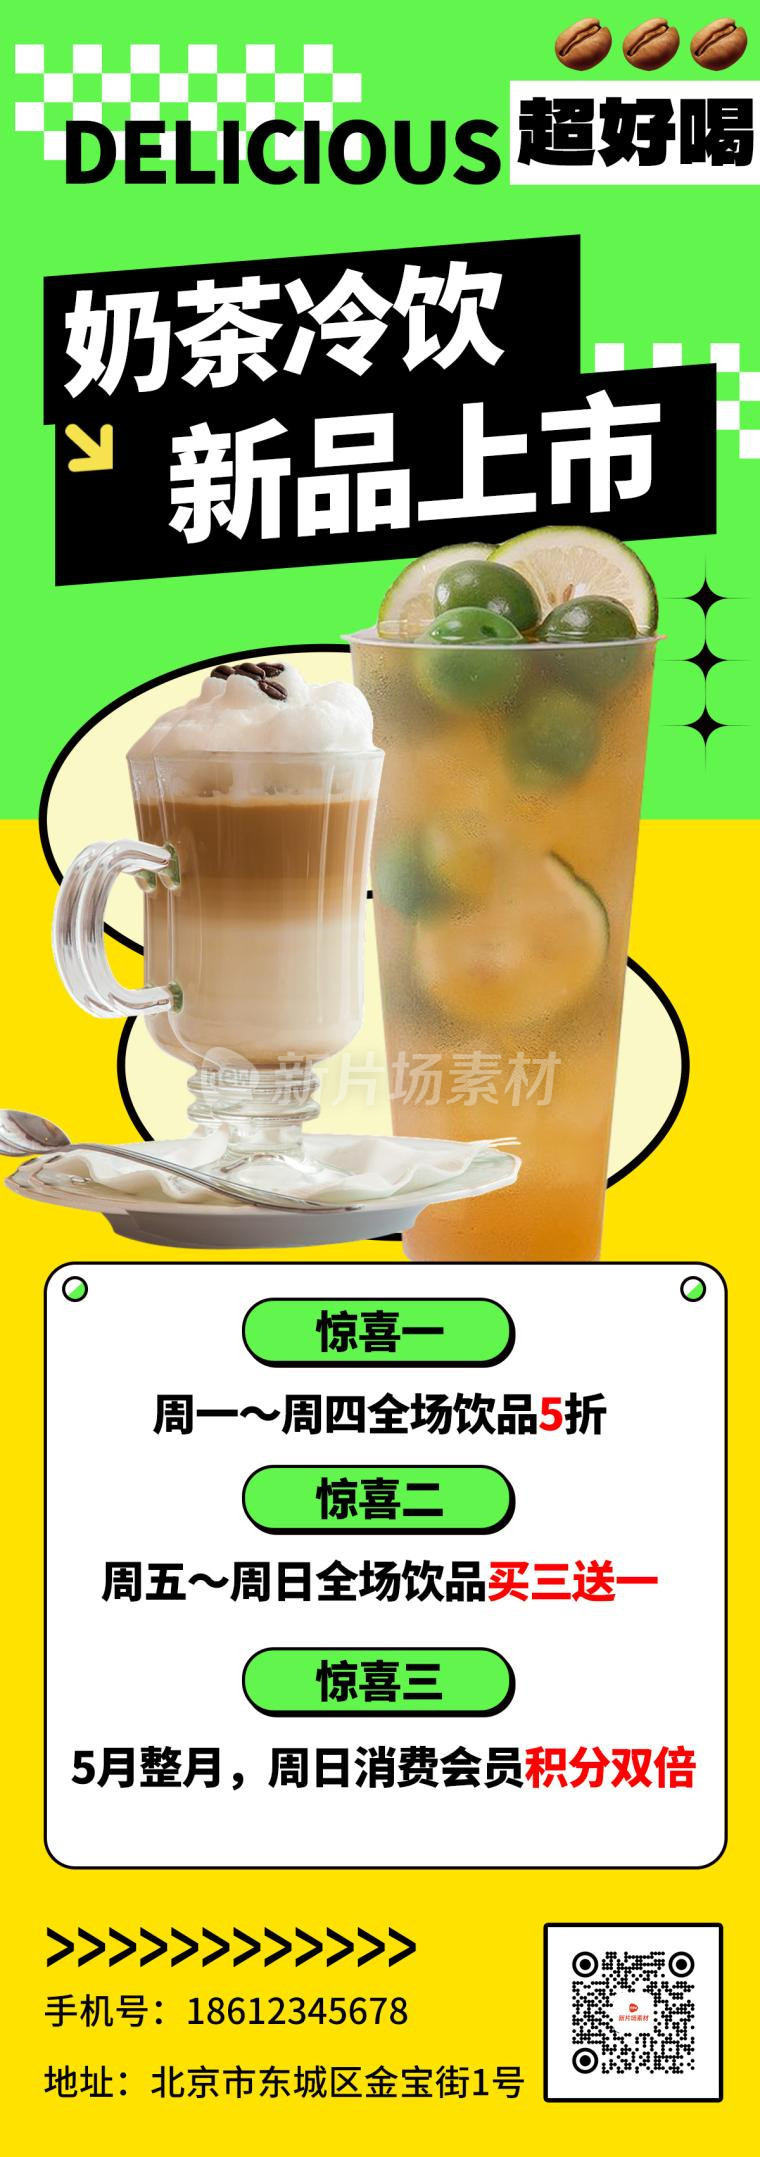 奶茶饮品新品上市宣传促销简约详情长图